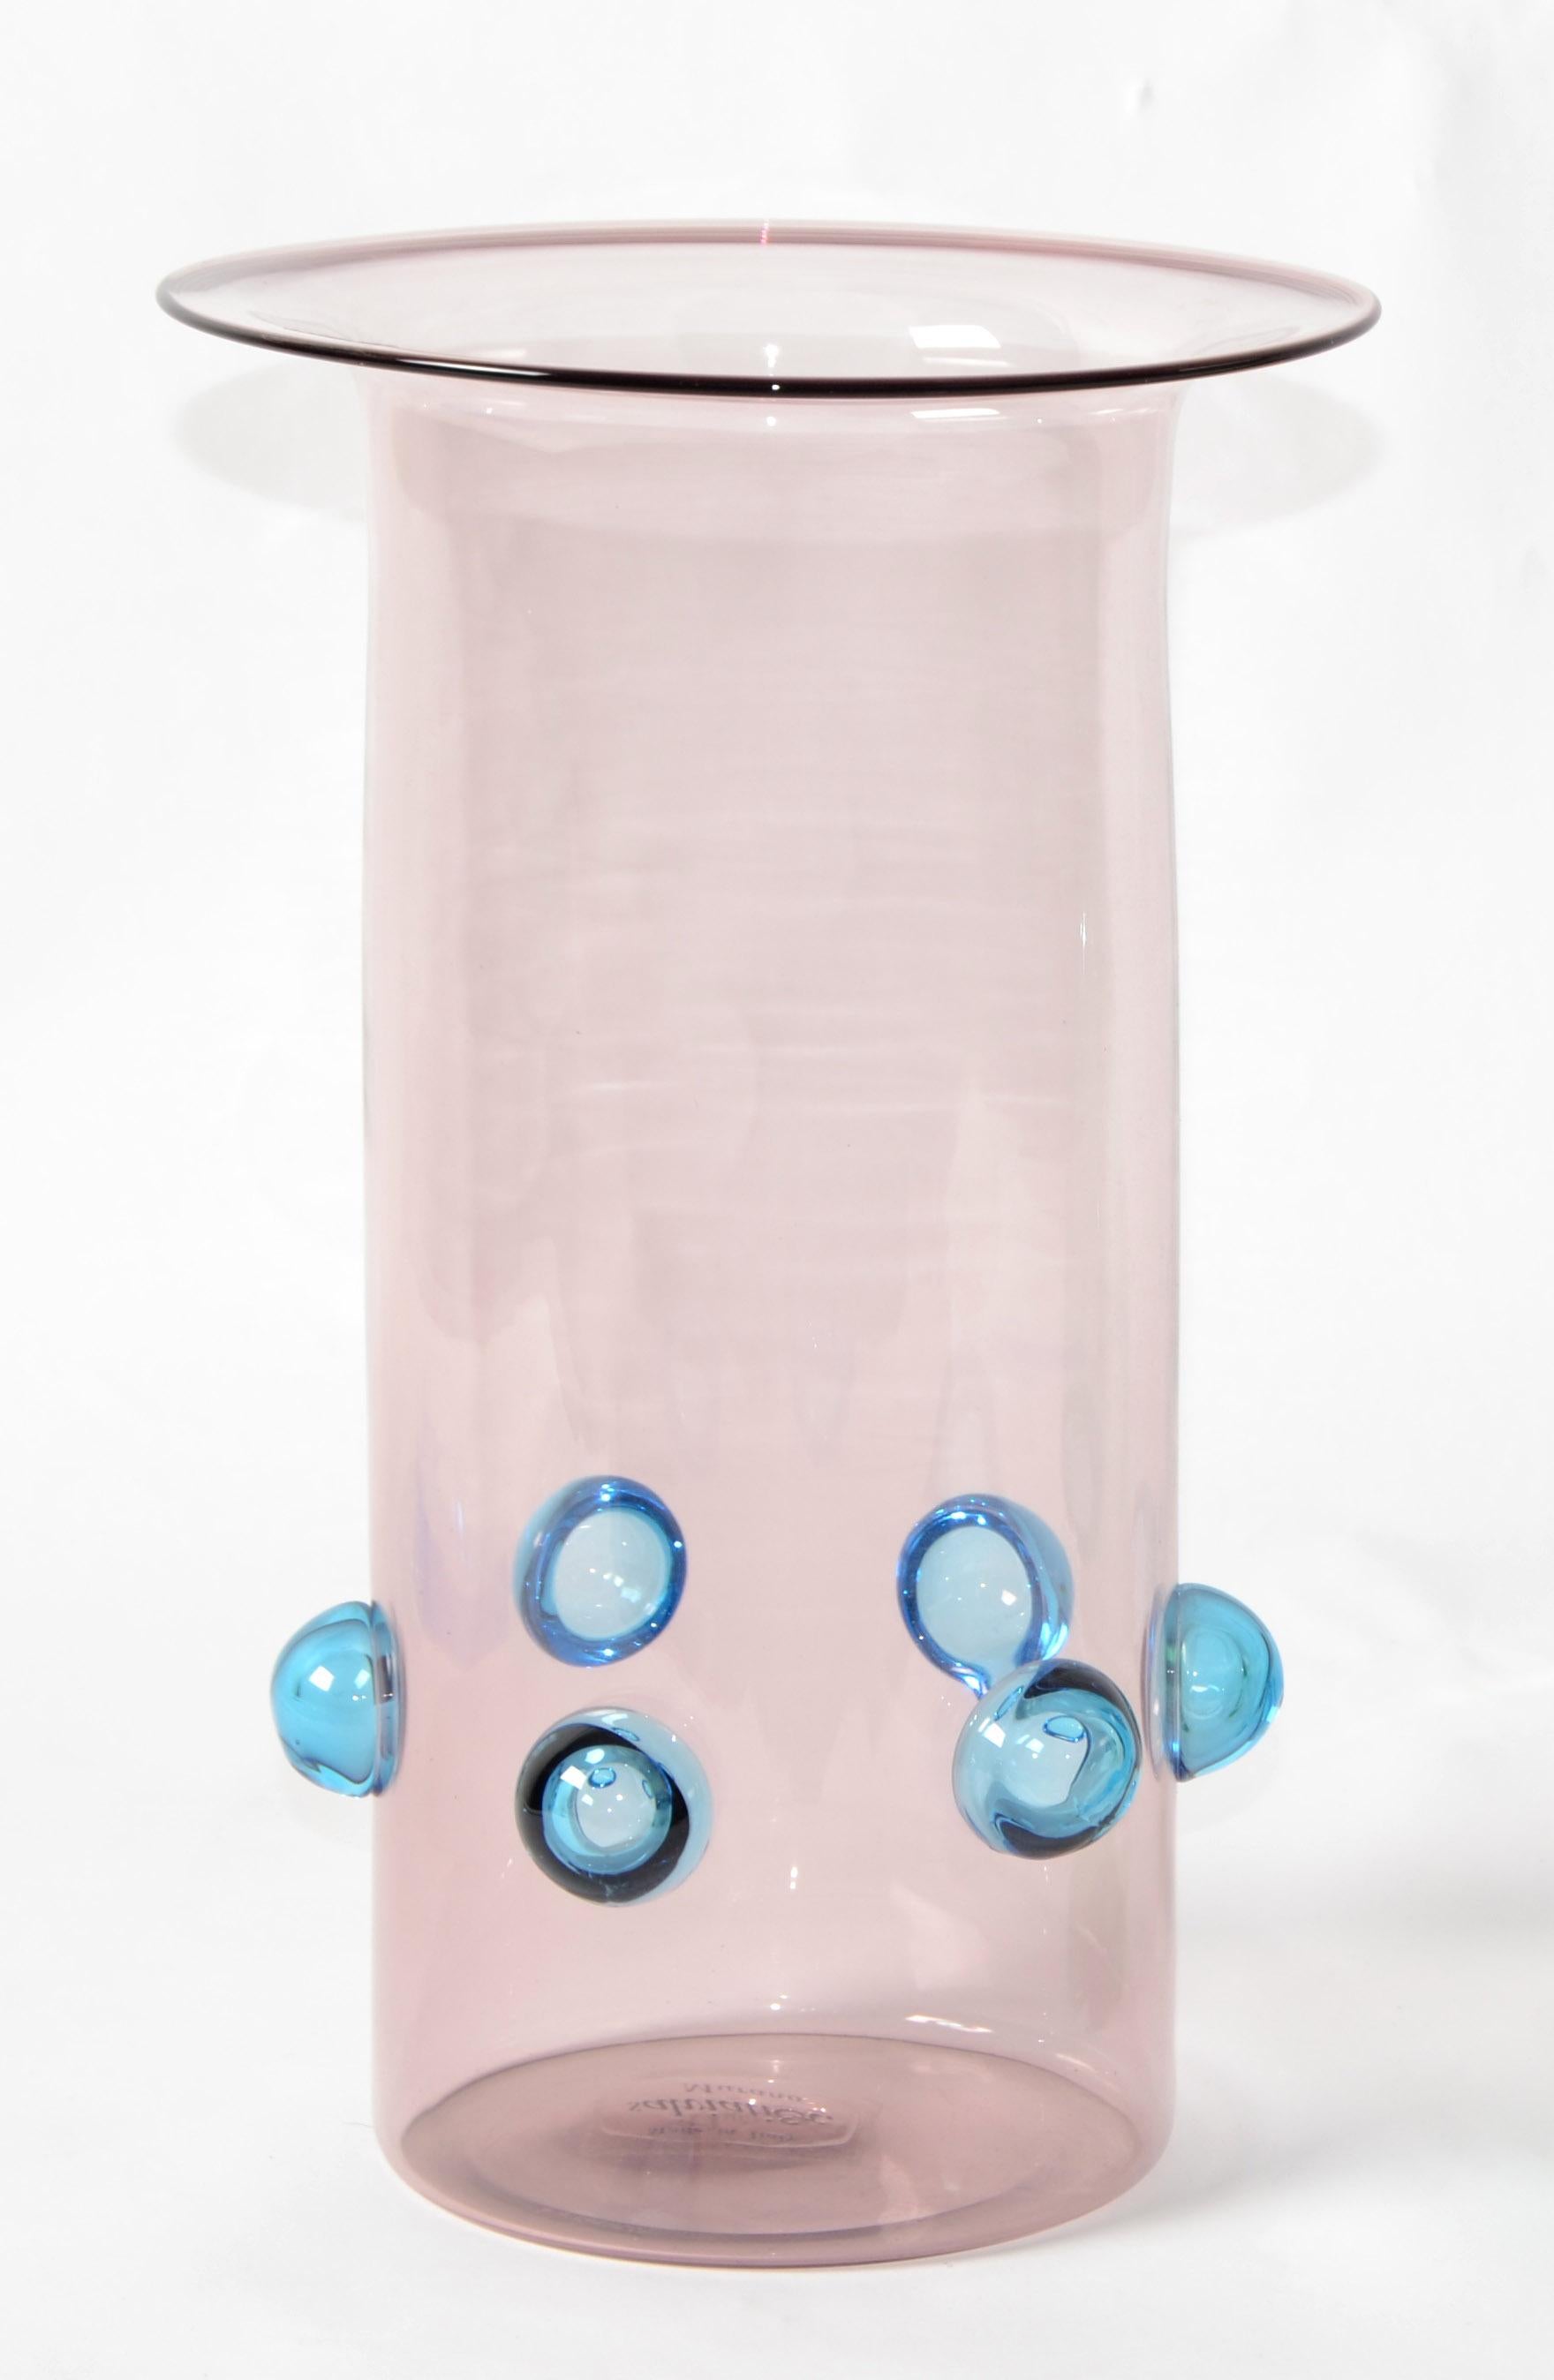 Einzigartige Luciano Gaspari mundgeblasenes Kunstglas Zylinderförmige Vase in hellrosa mit einem Kreis von blauen Blasen um, für Salviati Murano, Venedig gemacht.
Italienisches Mid-Century Modernes hochqualifiziertes handwerkliches Glashandwerk,